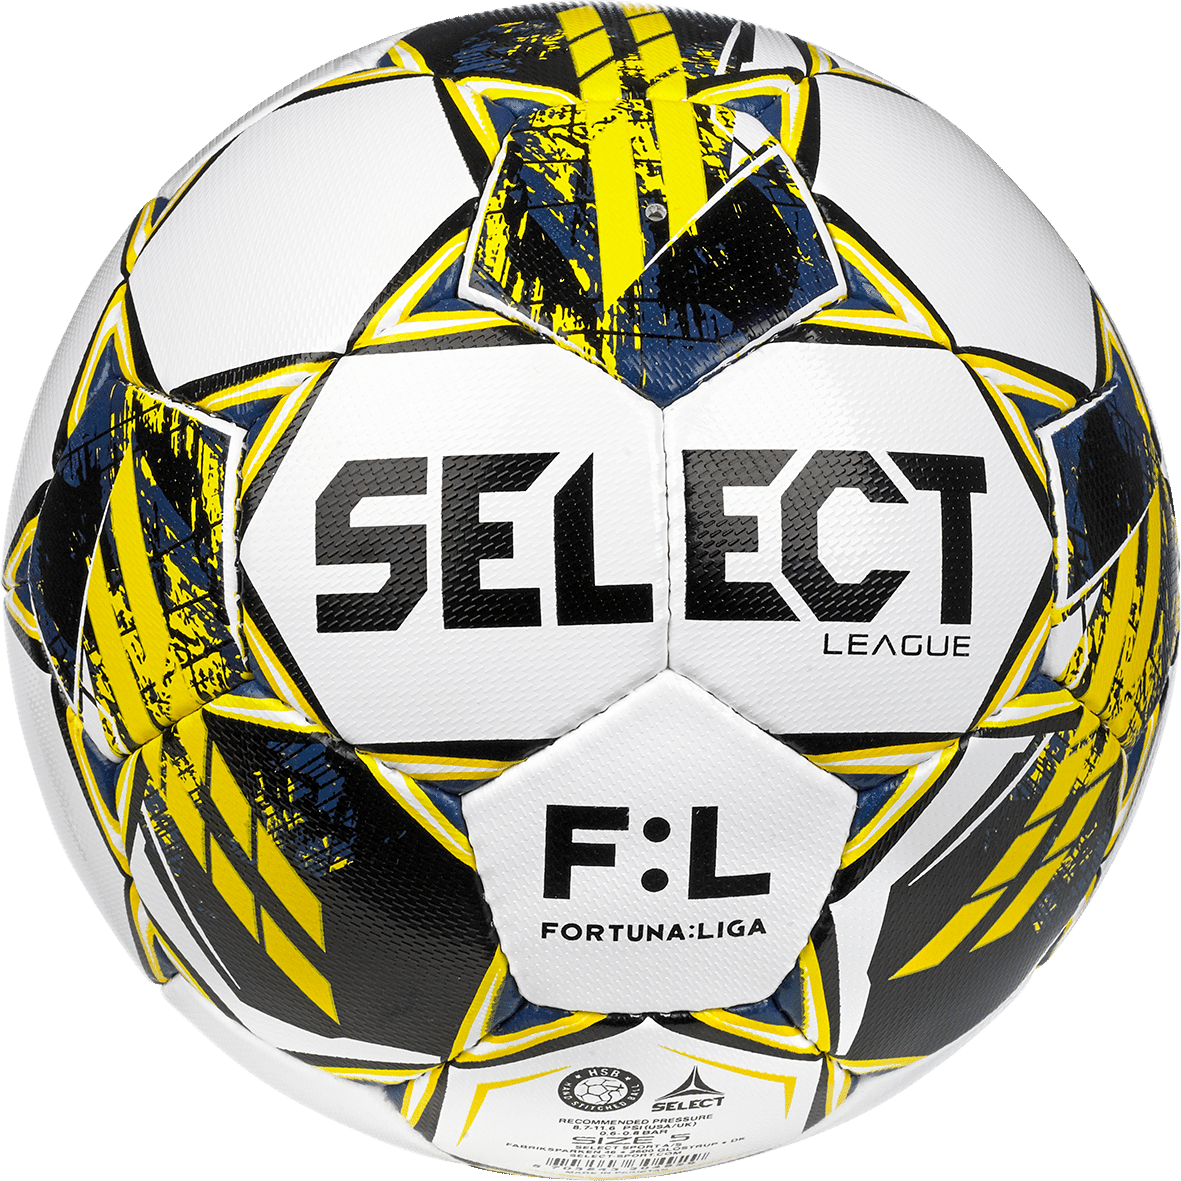 Fotbalový míč Select League FORTUNA:LIGA